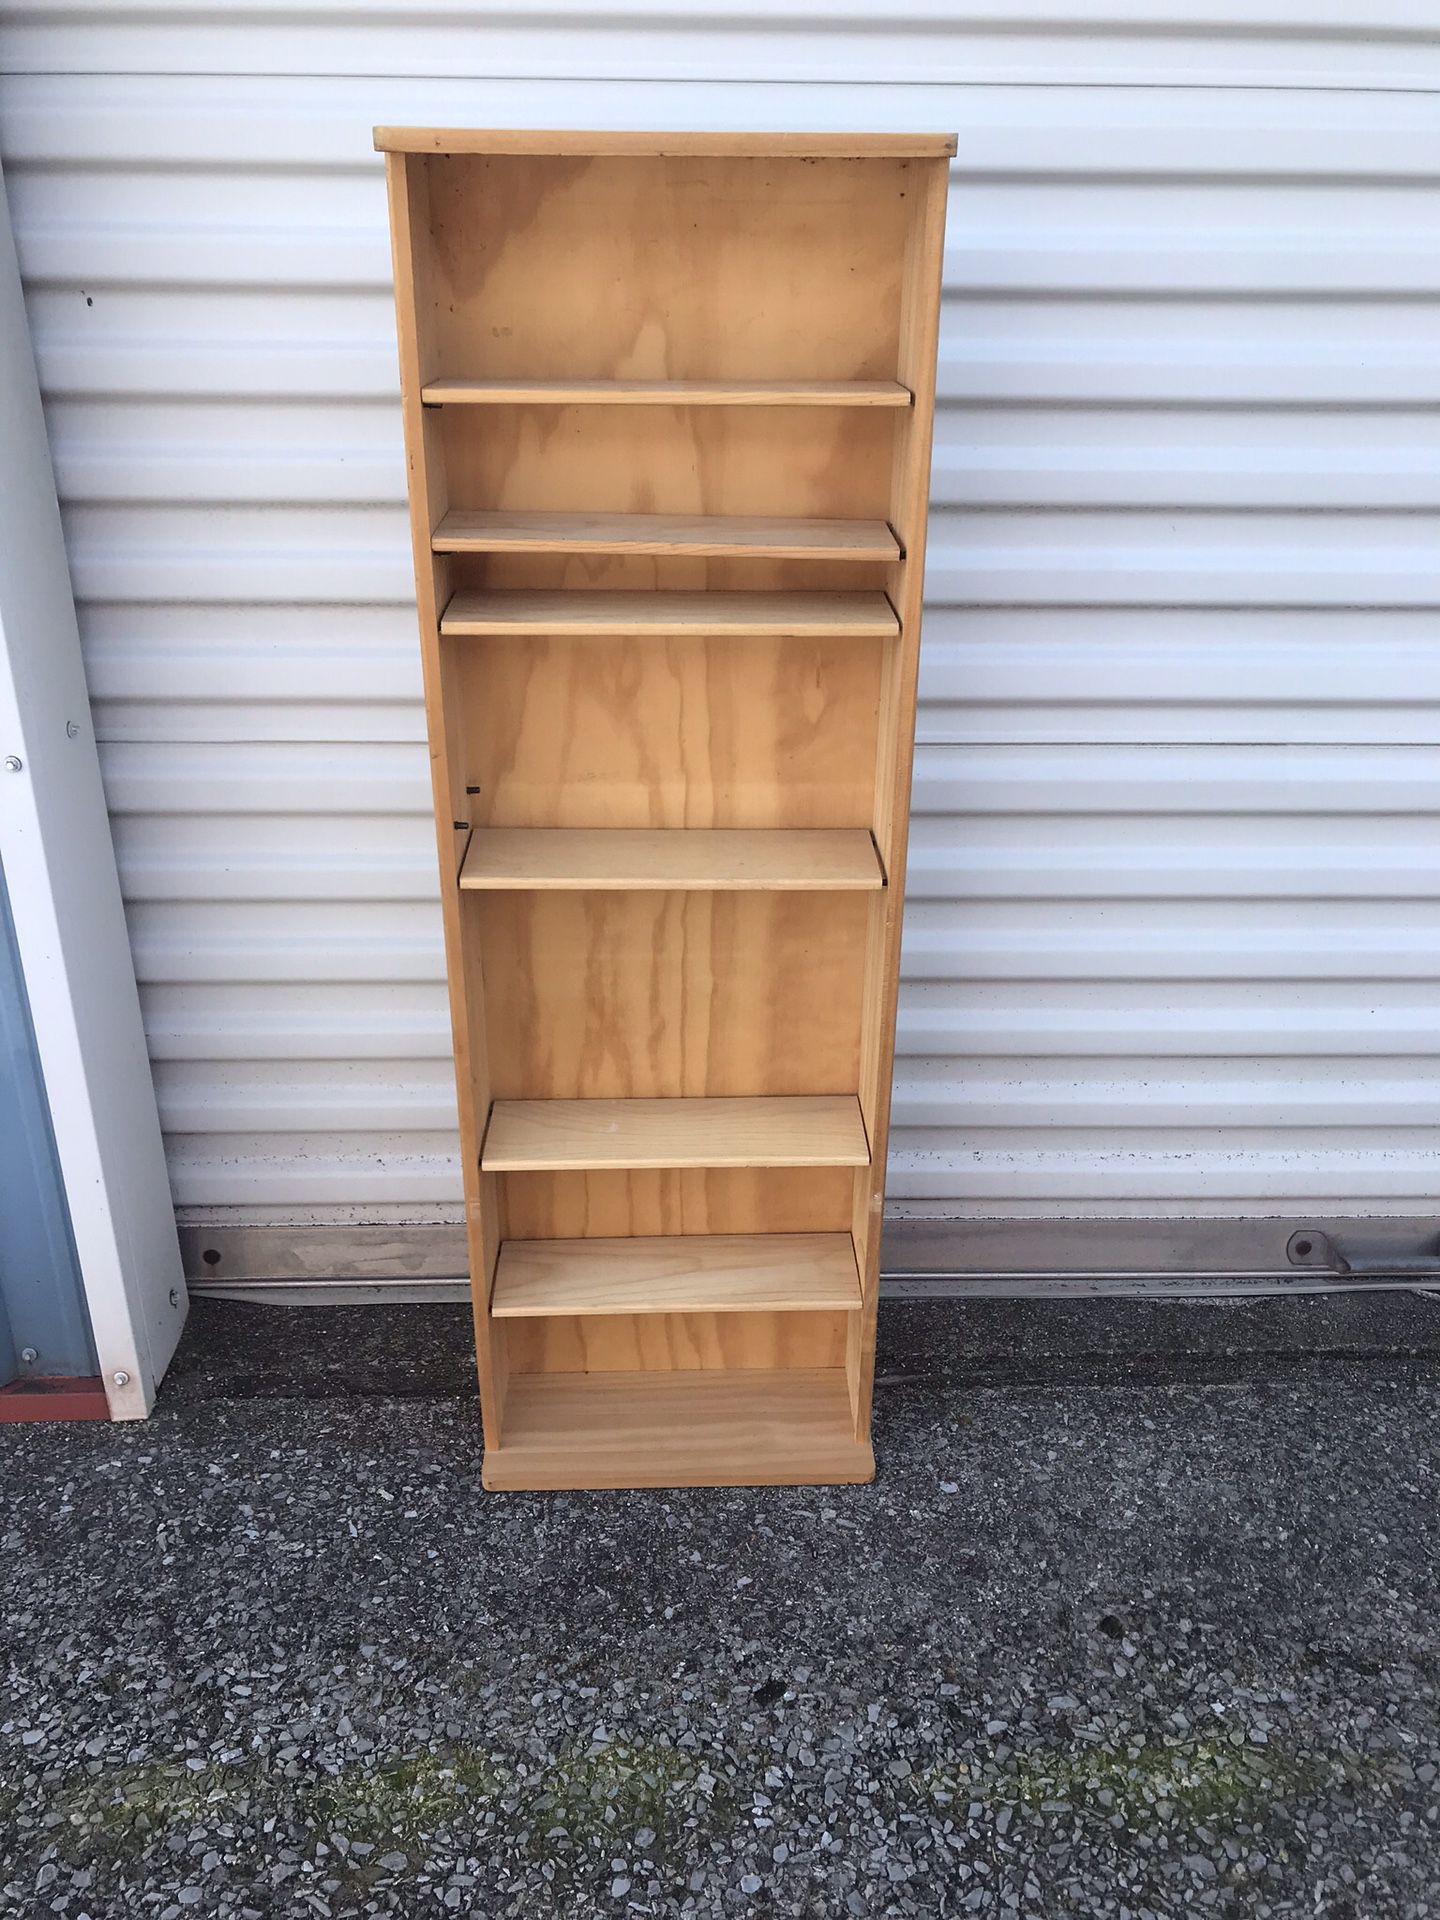 Wood shelf